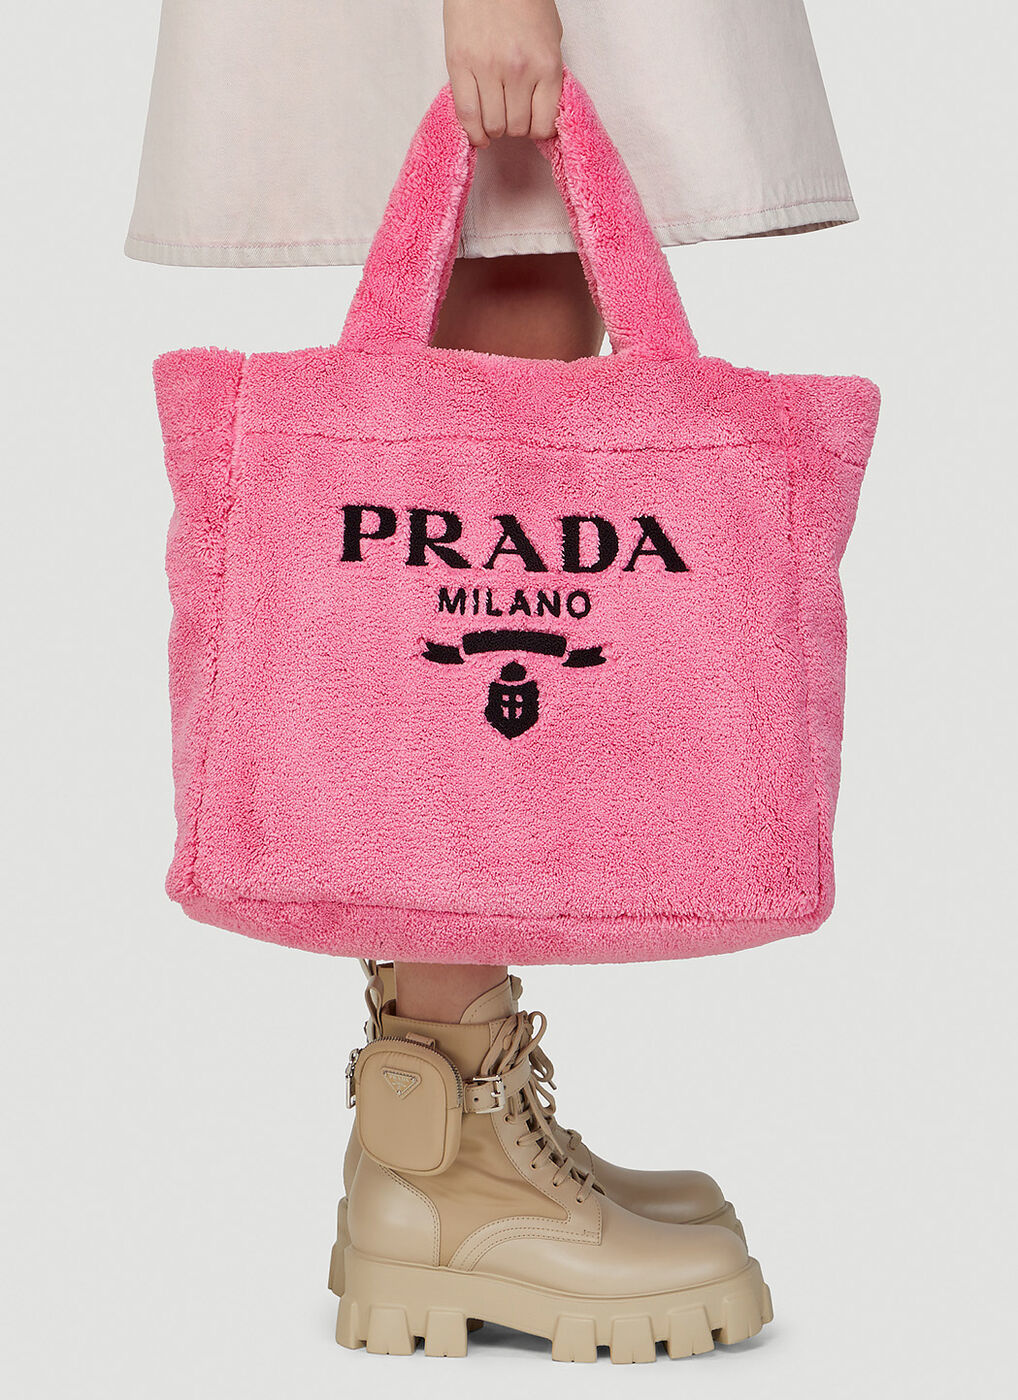 Terry Tote Bag in Pink Prada